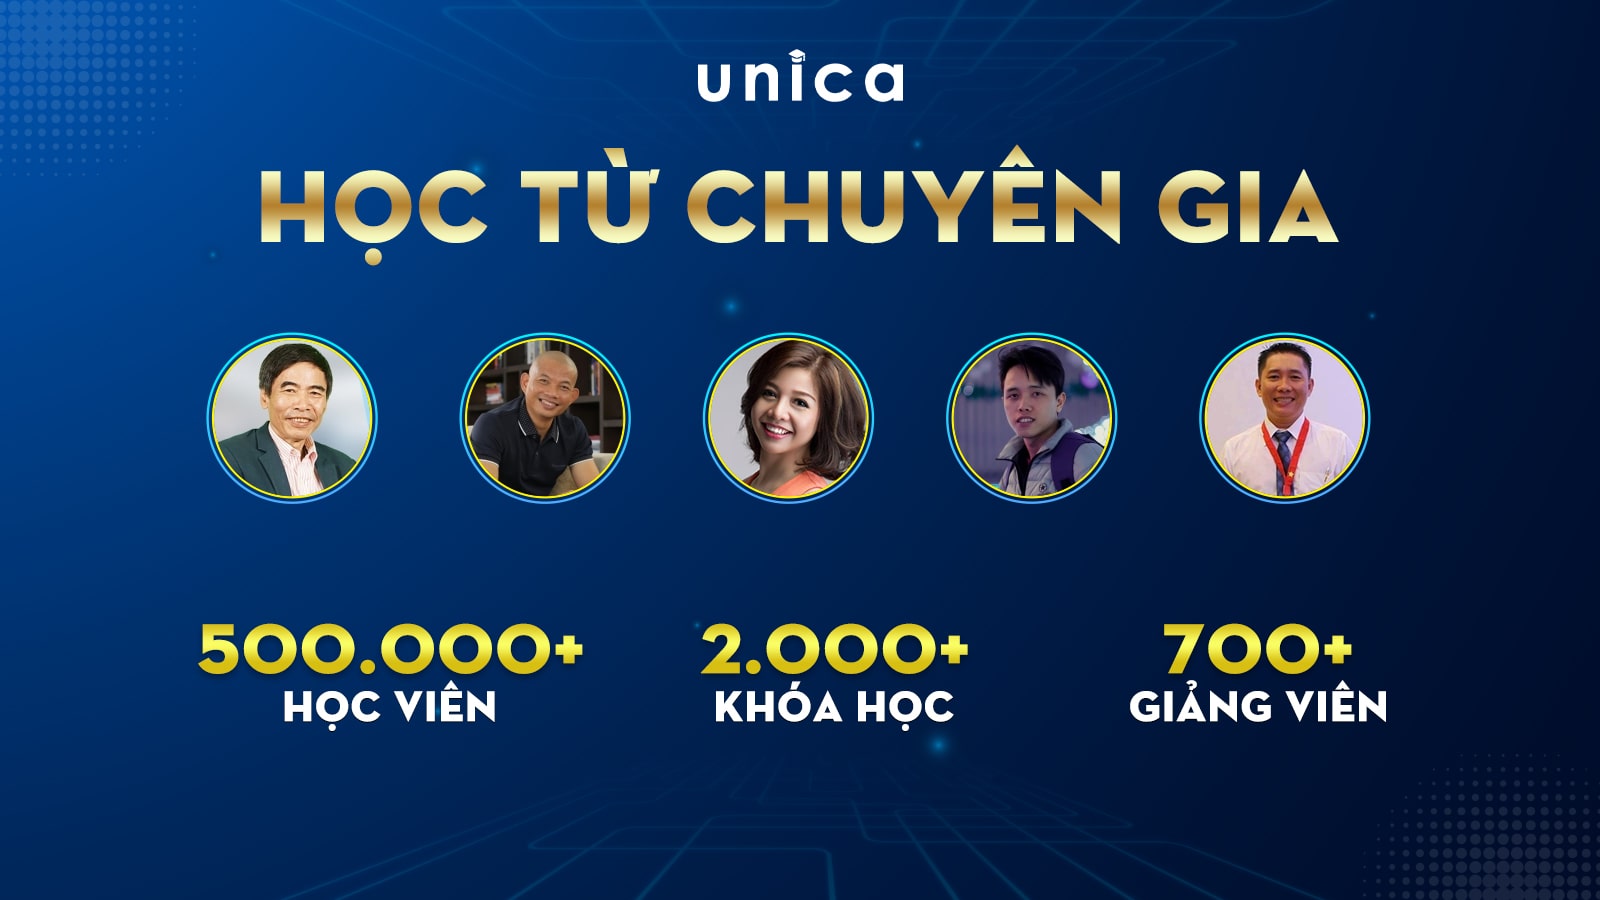 Unica mã giảm giá độc quyền từ 40% đến 70%